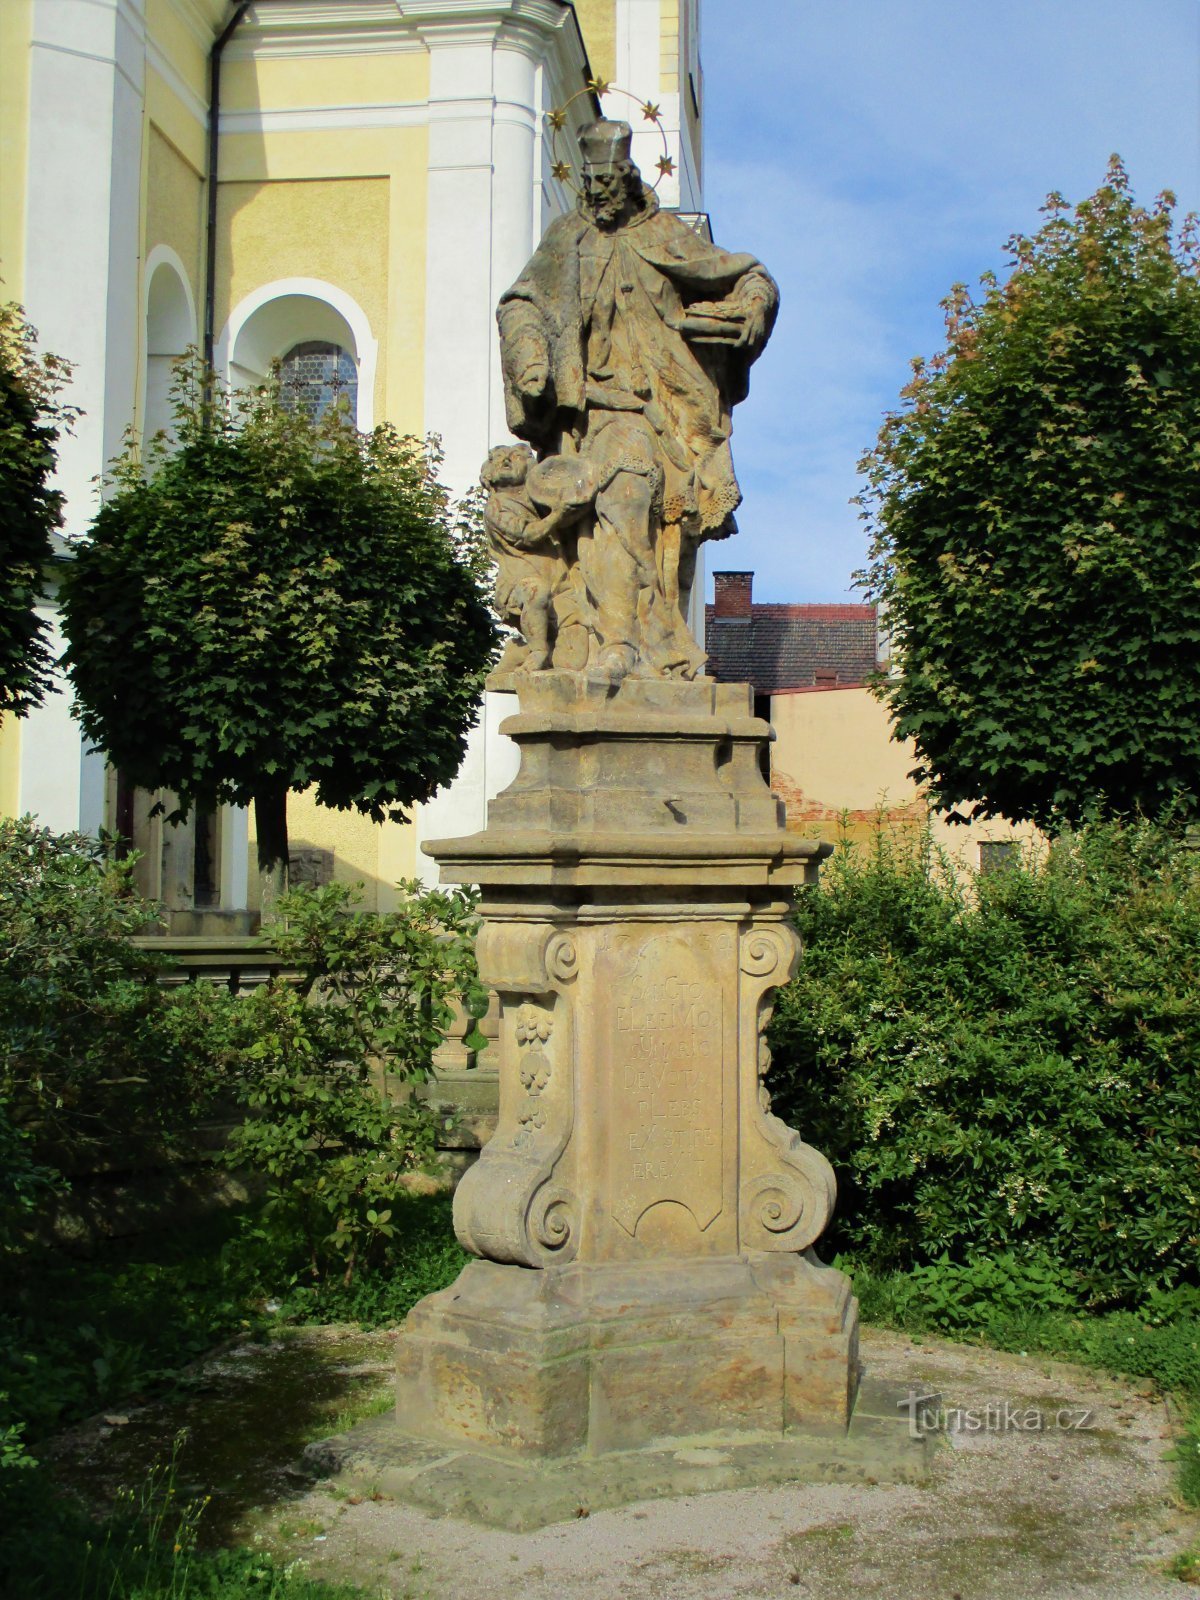 Tượng thánh John of Nepomuck tại nhà thờ (Hořice, ngày 26.7.2020 tháng XNUMX năm XNUMX)